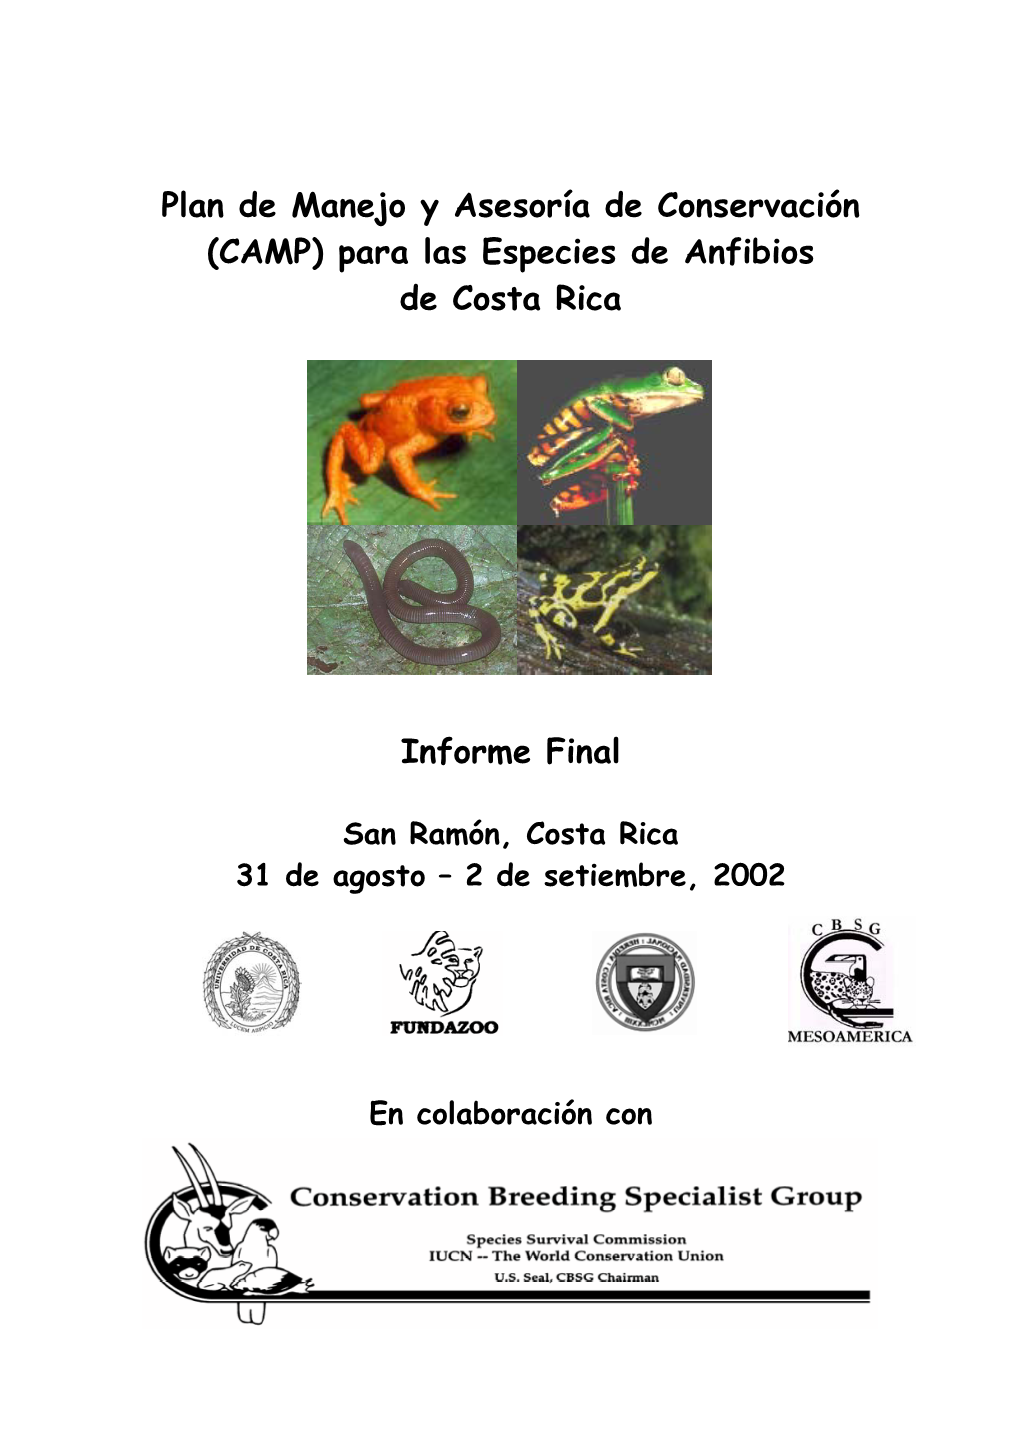 (CAMP) Para Las Especies De Anfibios De Costa Rica Informe Final